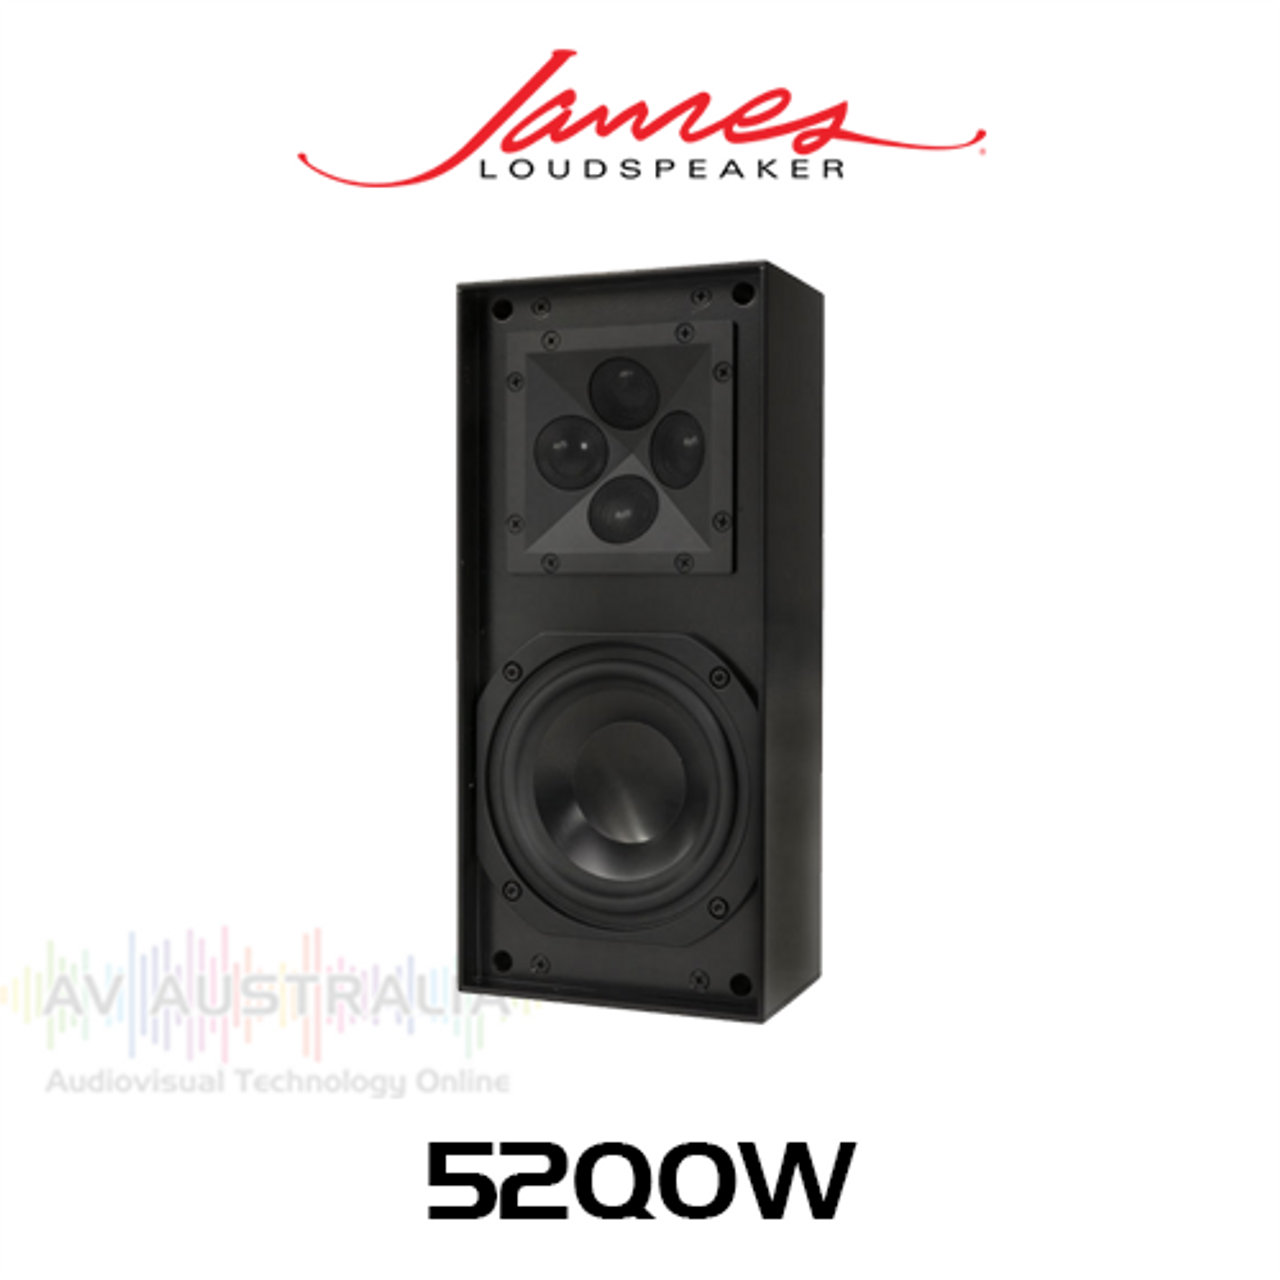 James Loudspeaker 52QOW 5.25" On-Wall Loudspeaker - 3.5" Depth (Each)